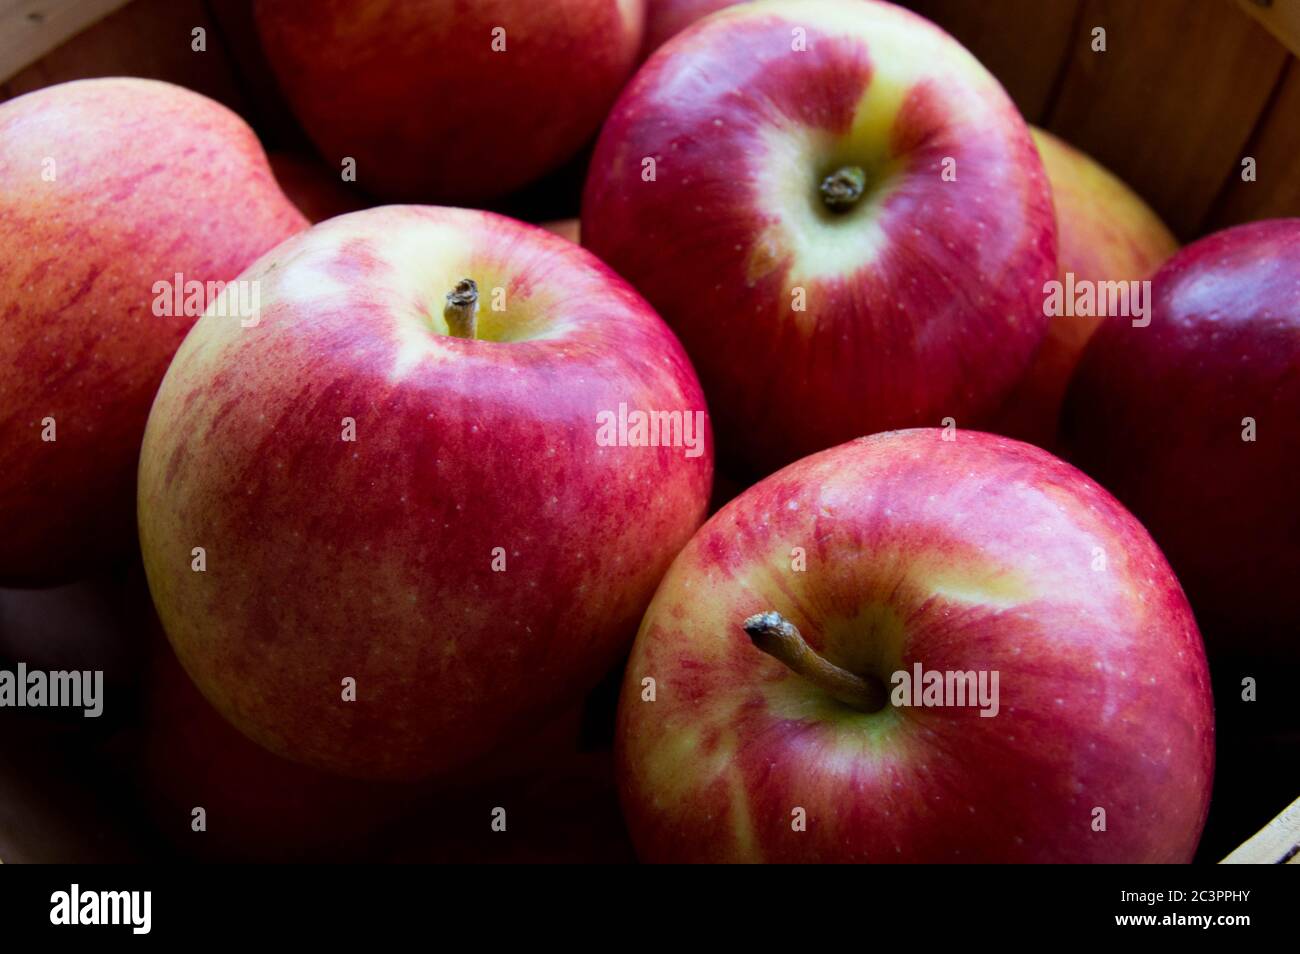 jazz apples Stock Photo